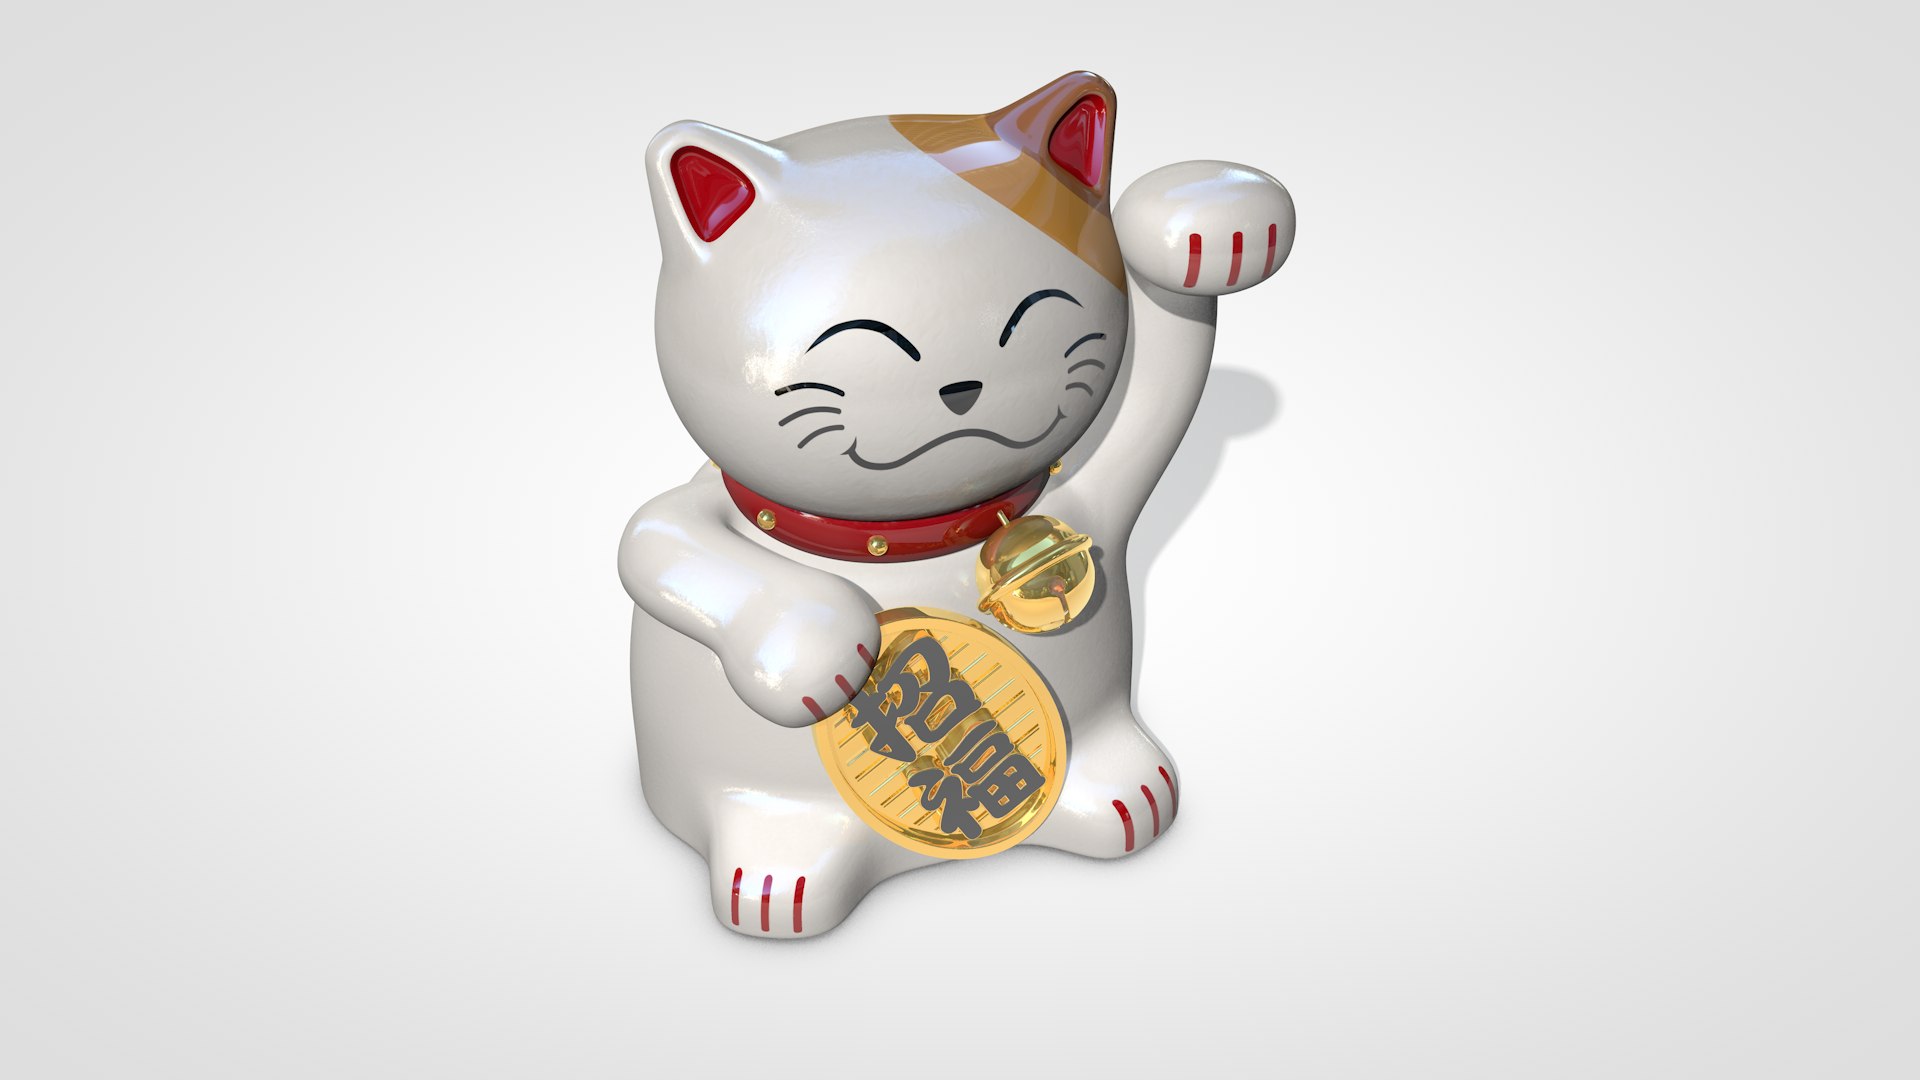 Maneki Neko japonês gato da sorte Modelo 3D $18 - .c4d .x .wrl